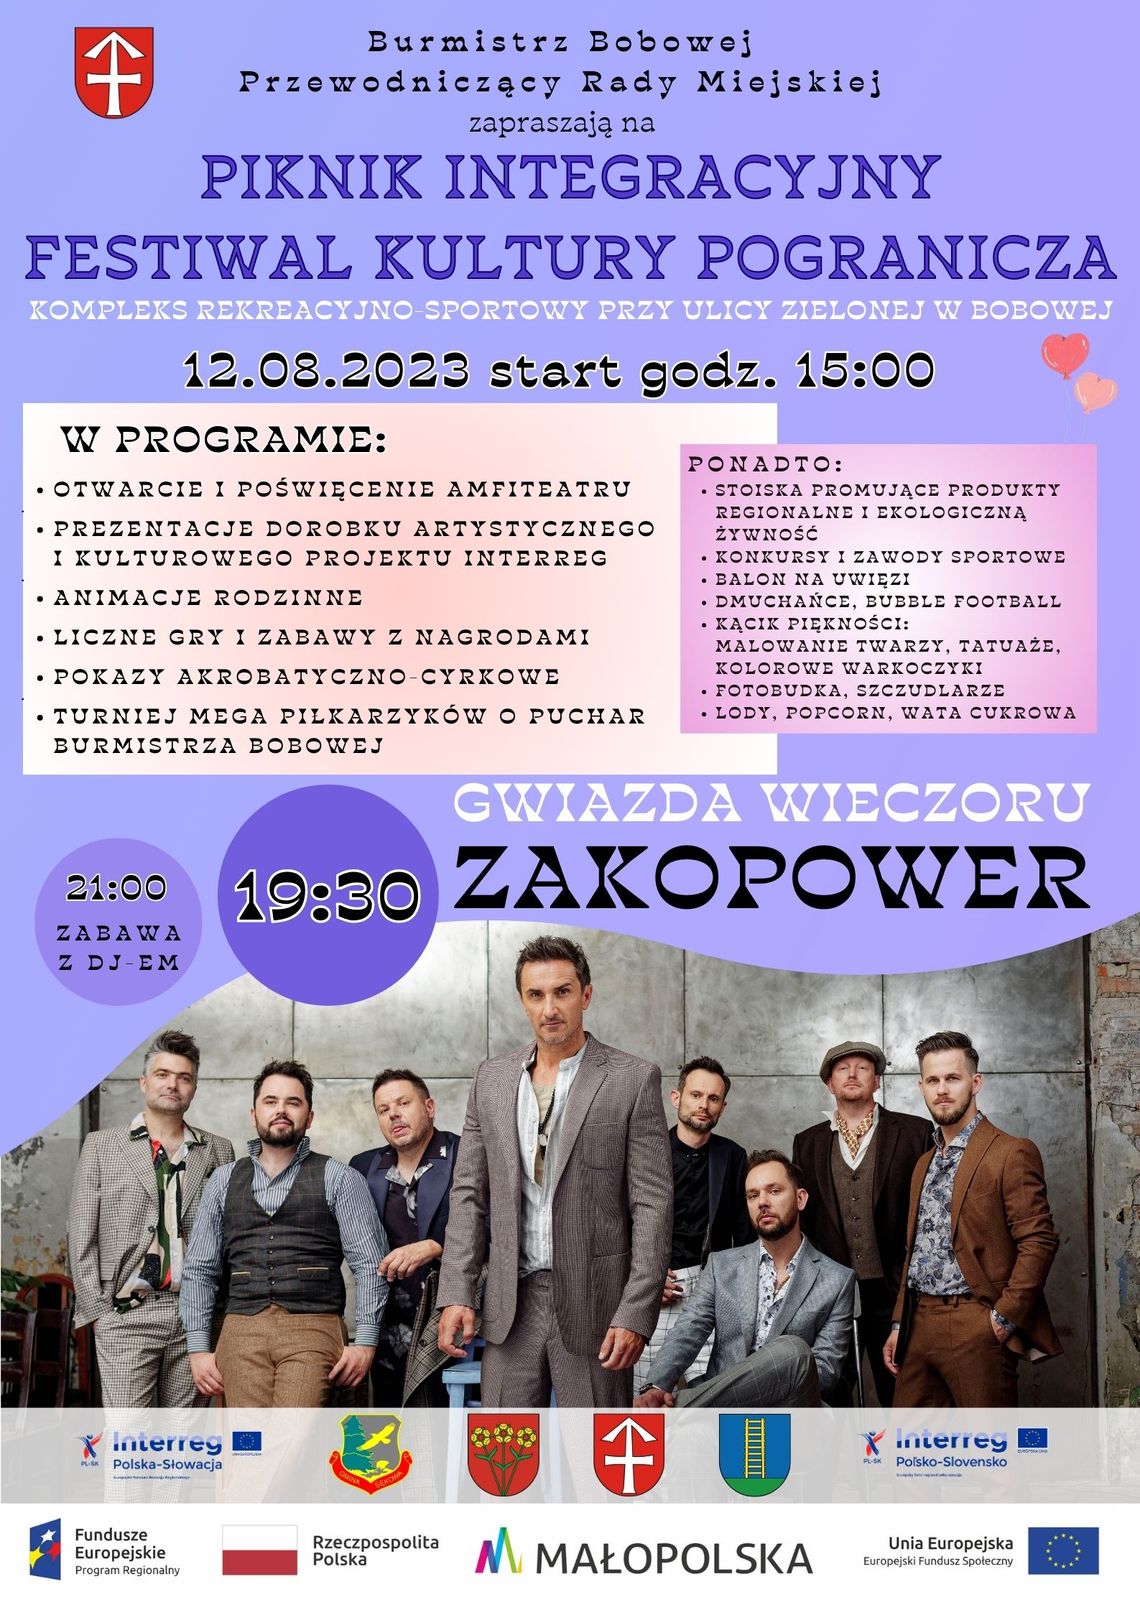 Piknik Integracyjny – Festiwal Kultury Pogranicza i koncert ZAKOPOWER | halgorlice.info